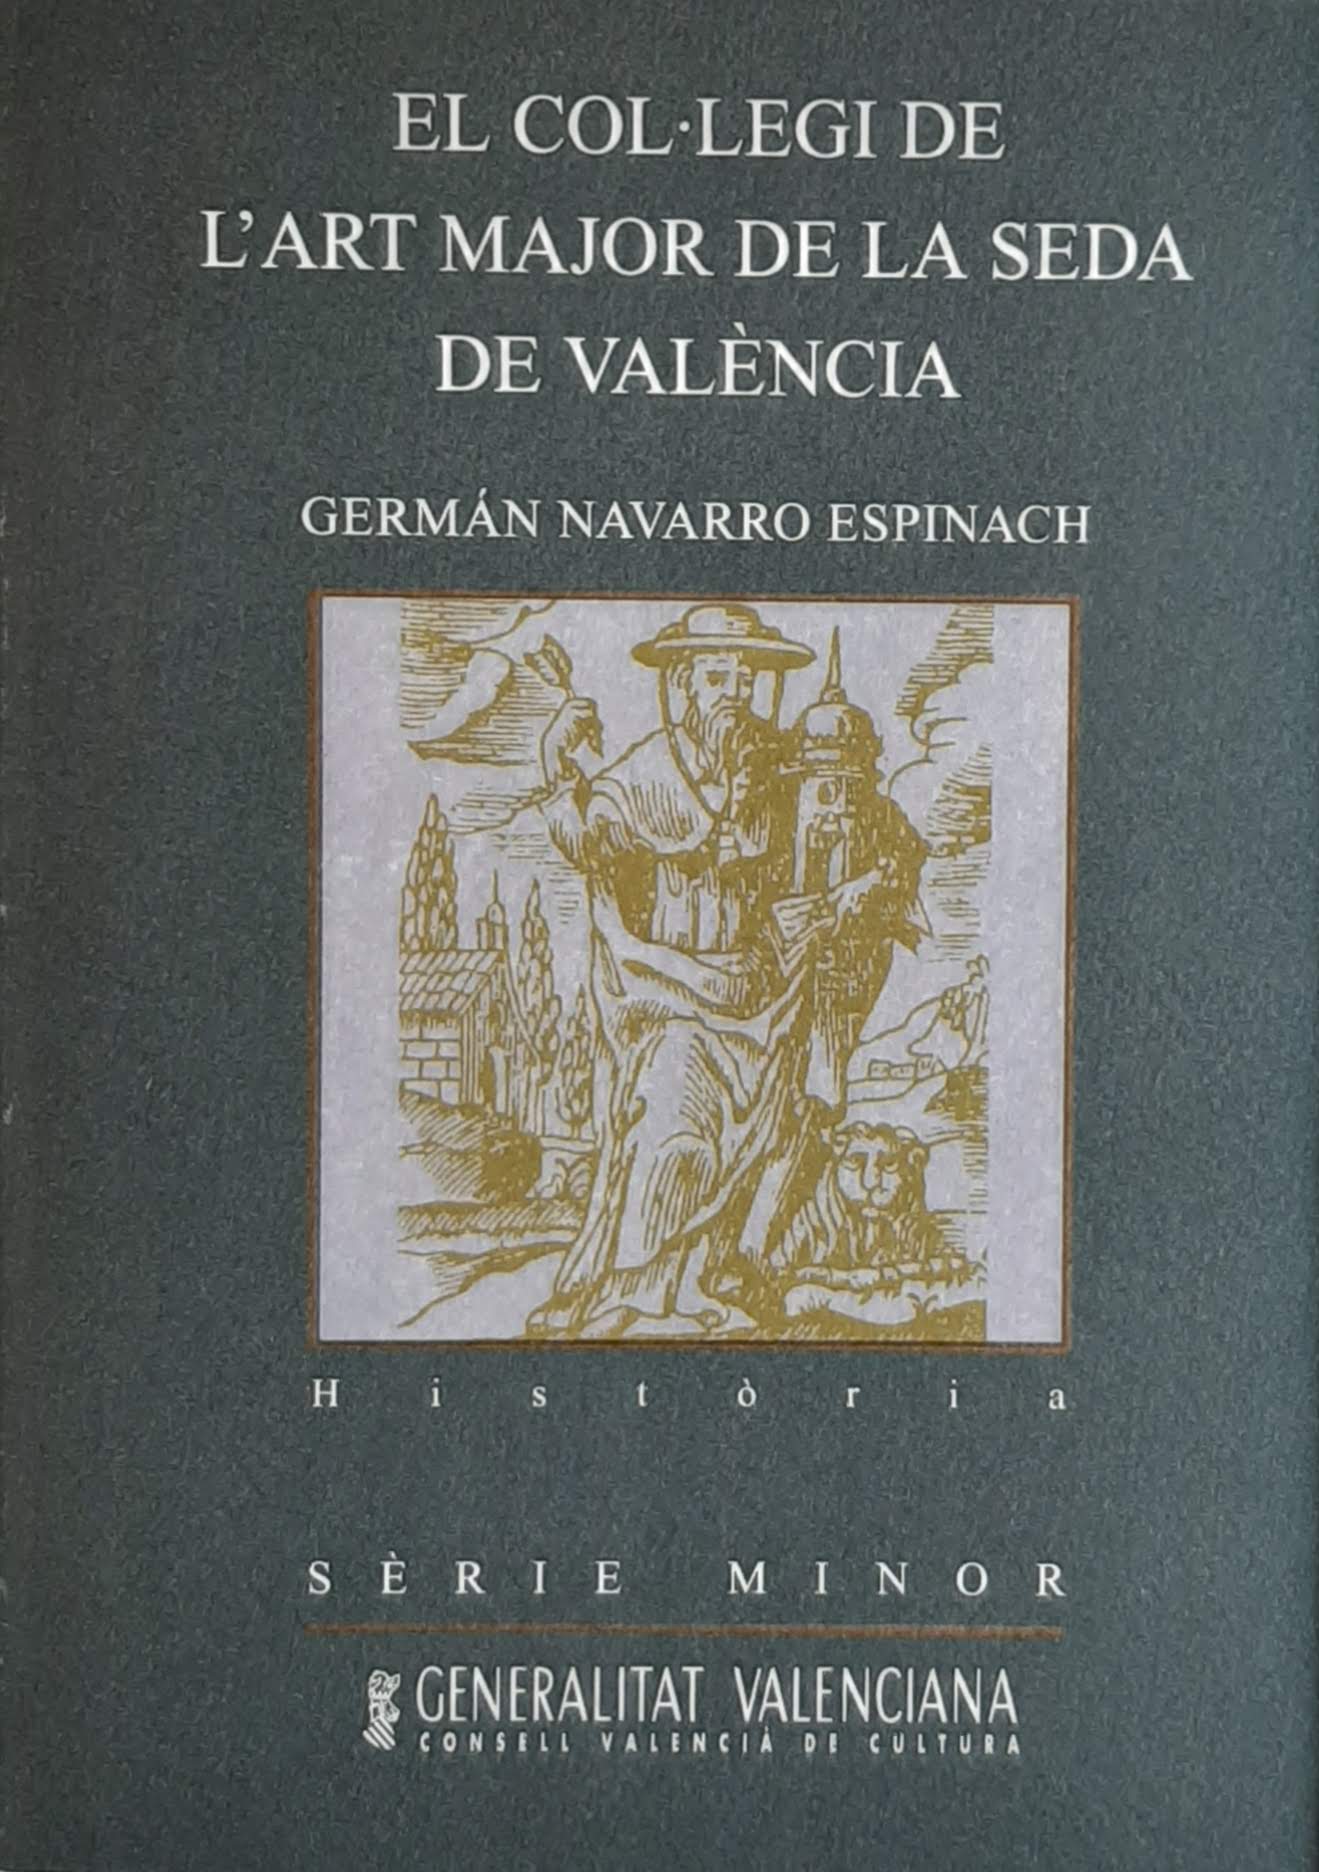 El Col·legi de l'Art Major de la Seda de València. Nº 38. Sèrie Minor